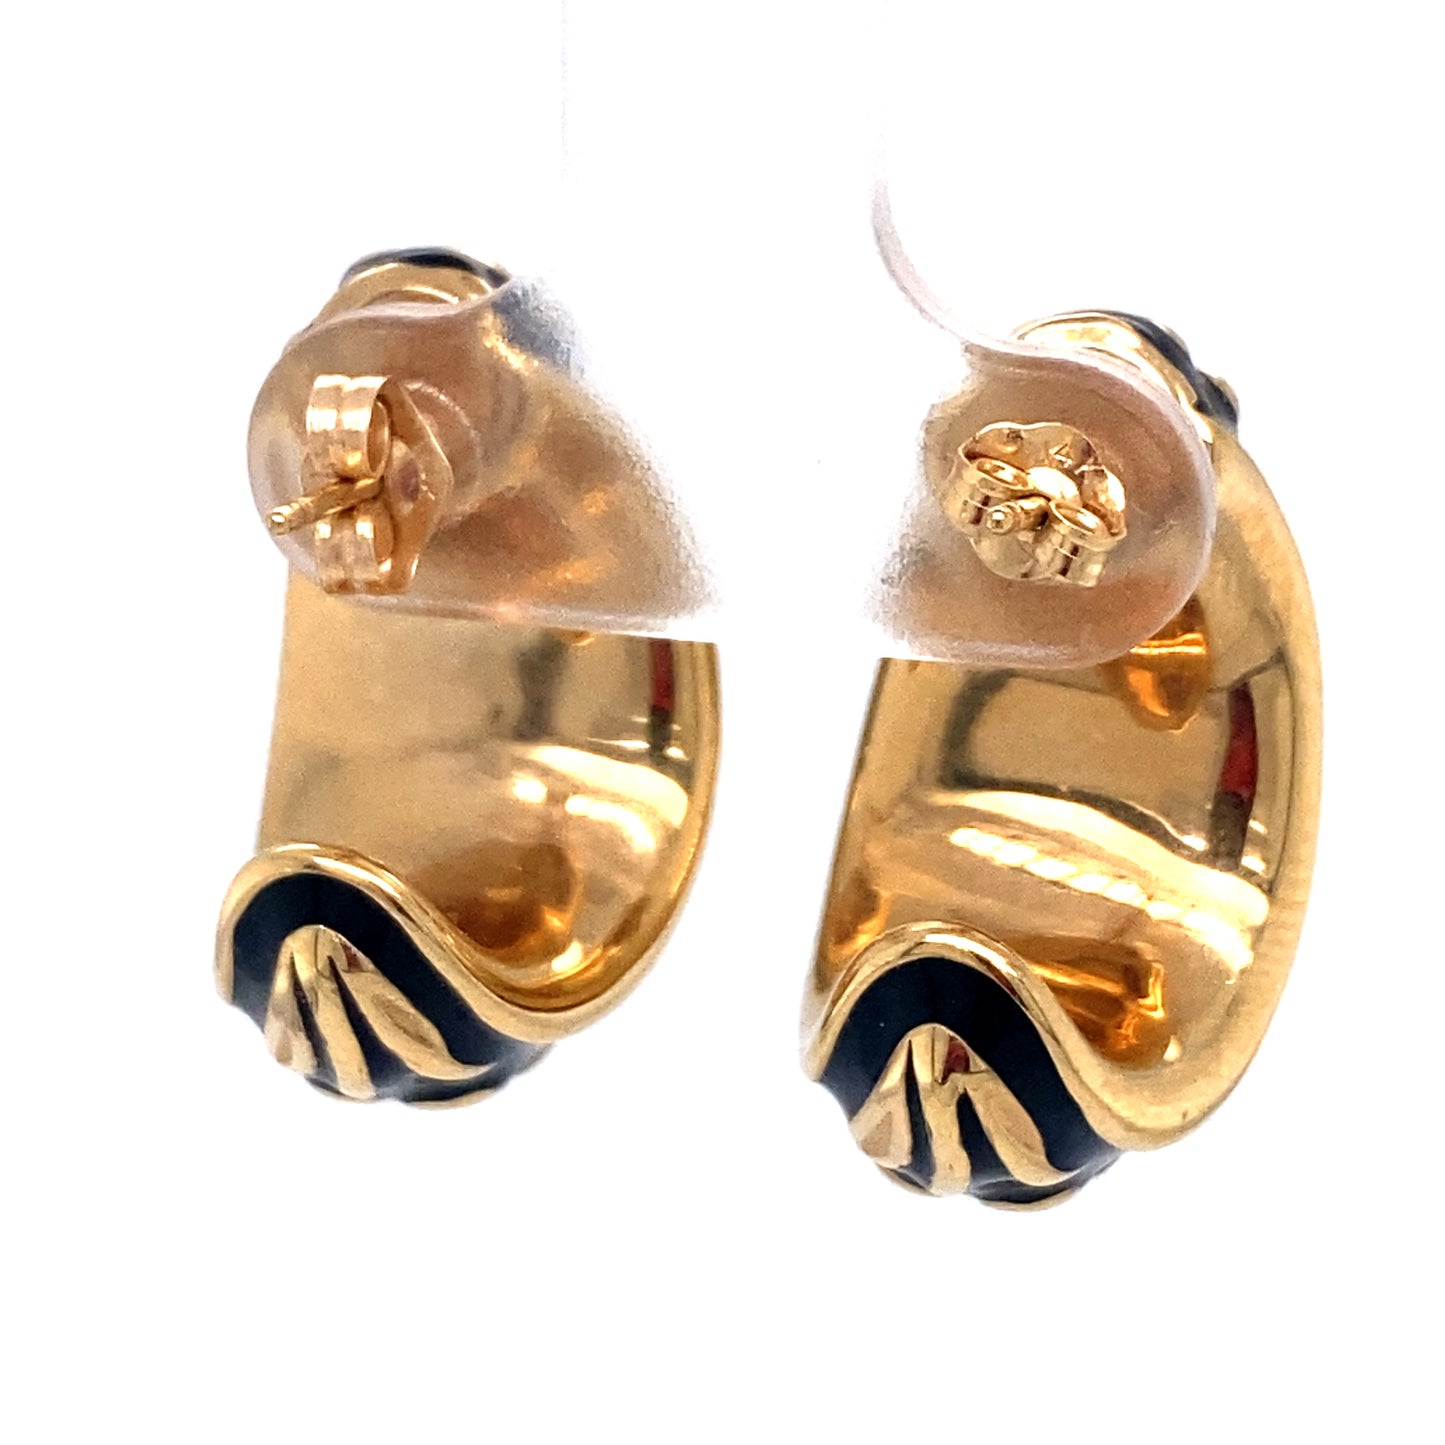 Circa 1960s Black Enamel Floral Motif Half Hoop Earrings in 14K Gold